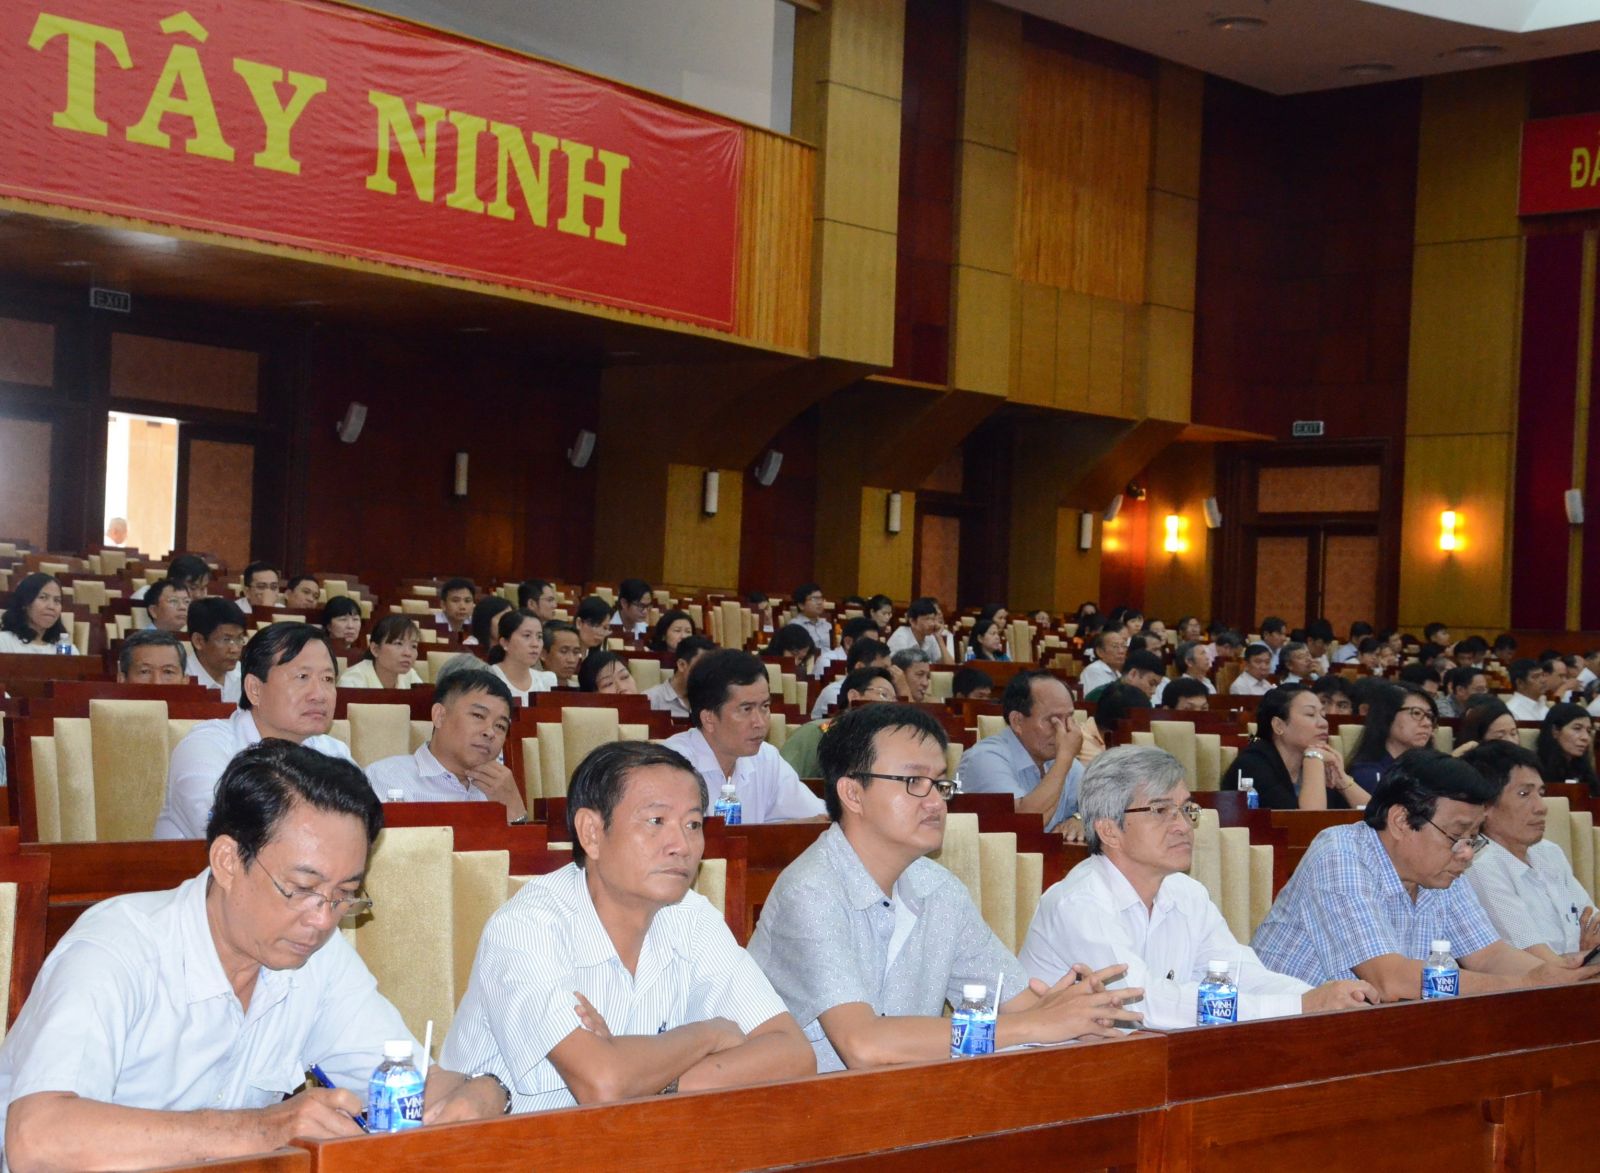 Điểm báo in Tây Ninh ngày 19.5.2018